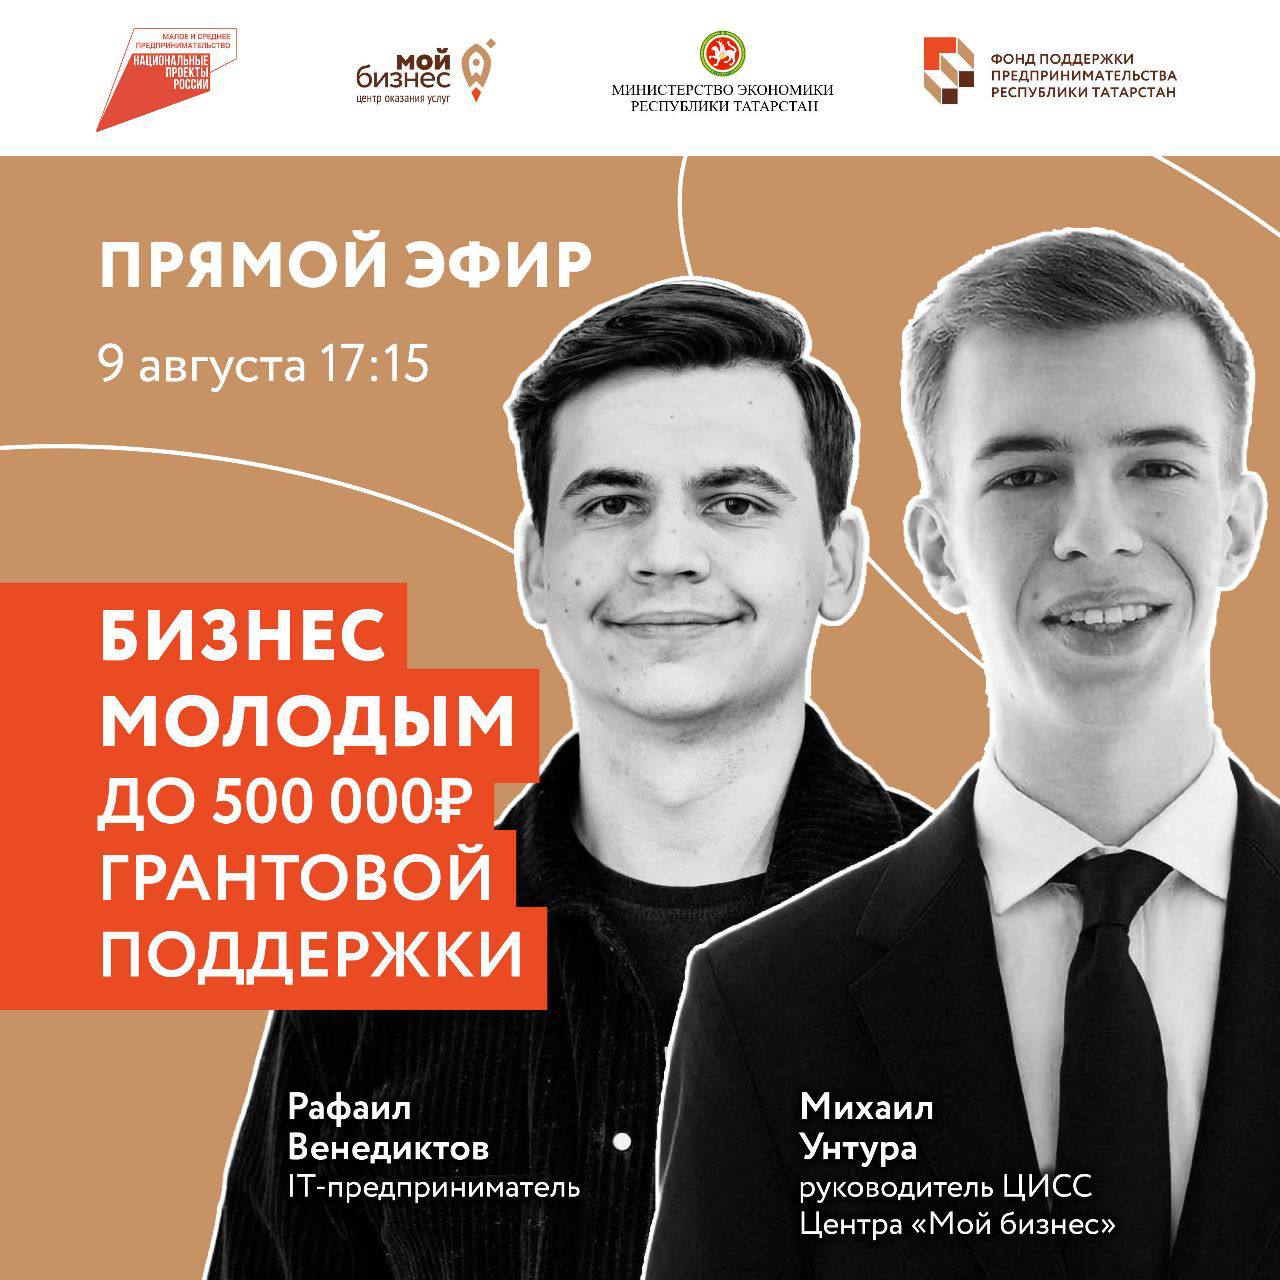 «Бизнес молодым» — о программе, которая стартует уже 10 августа, о своем опыте и возможностях для молодых предпринимателей Татарстана в прямом эфире